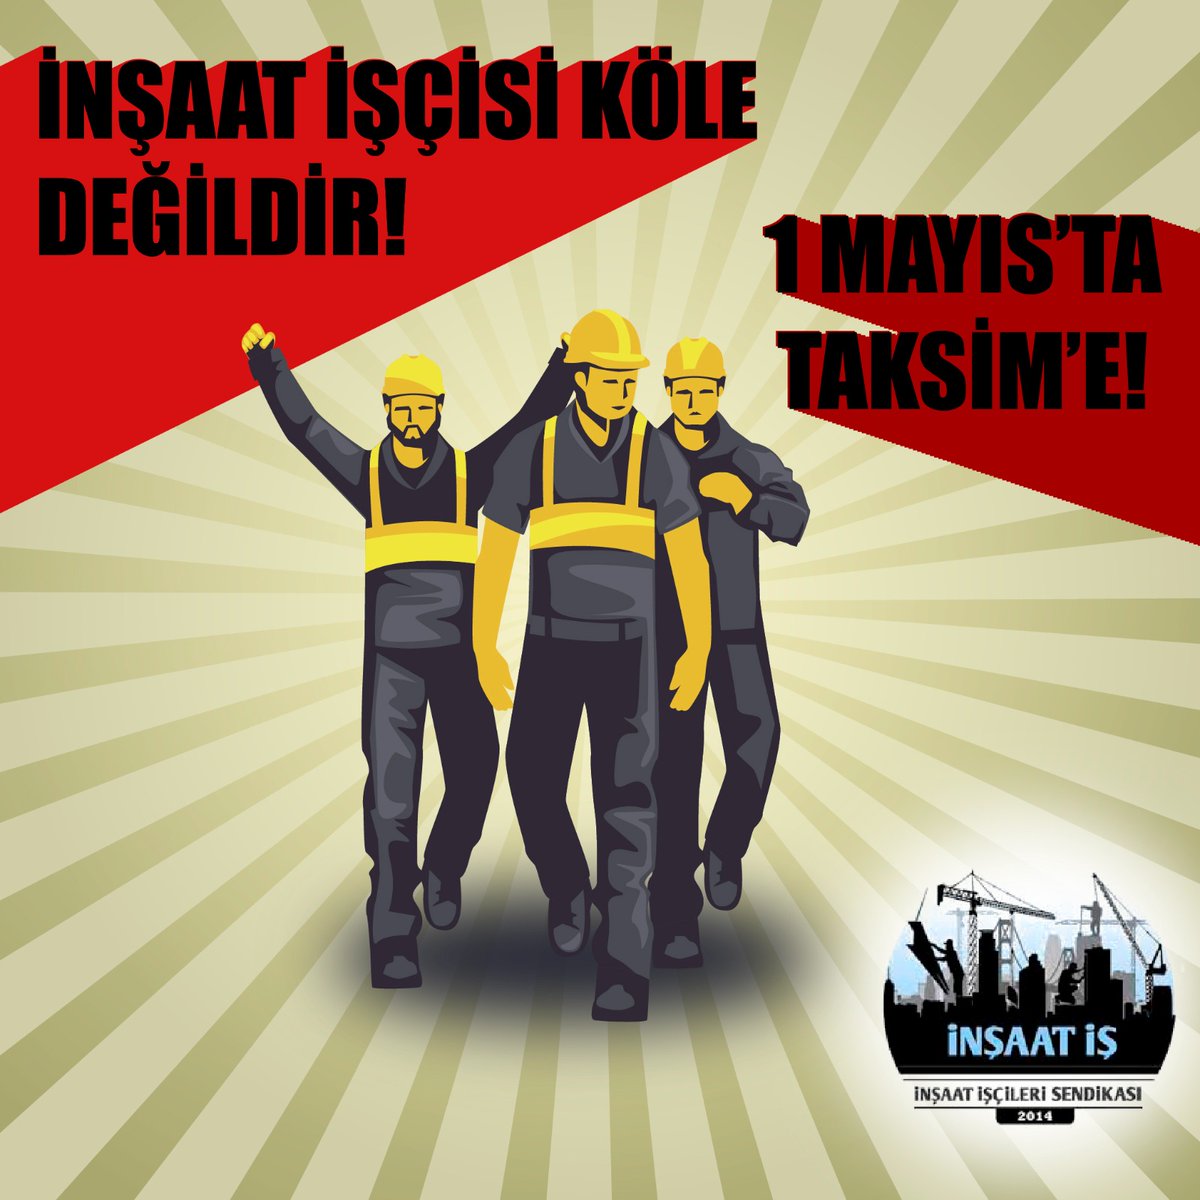 1 Mayıs'ta 1 Mayıs Alanındayız! 1 Mayıs'ta Taksim Meydanındayız! #1MayıstaHerkesTaksime